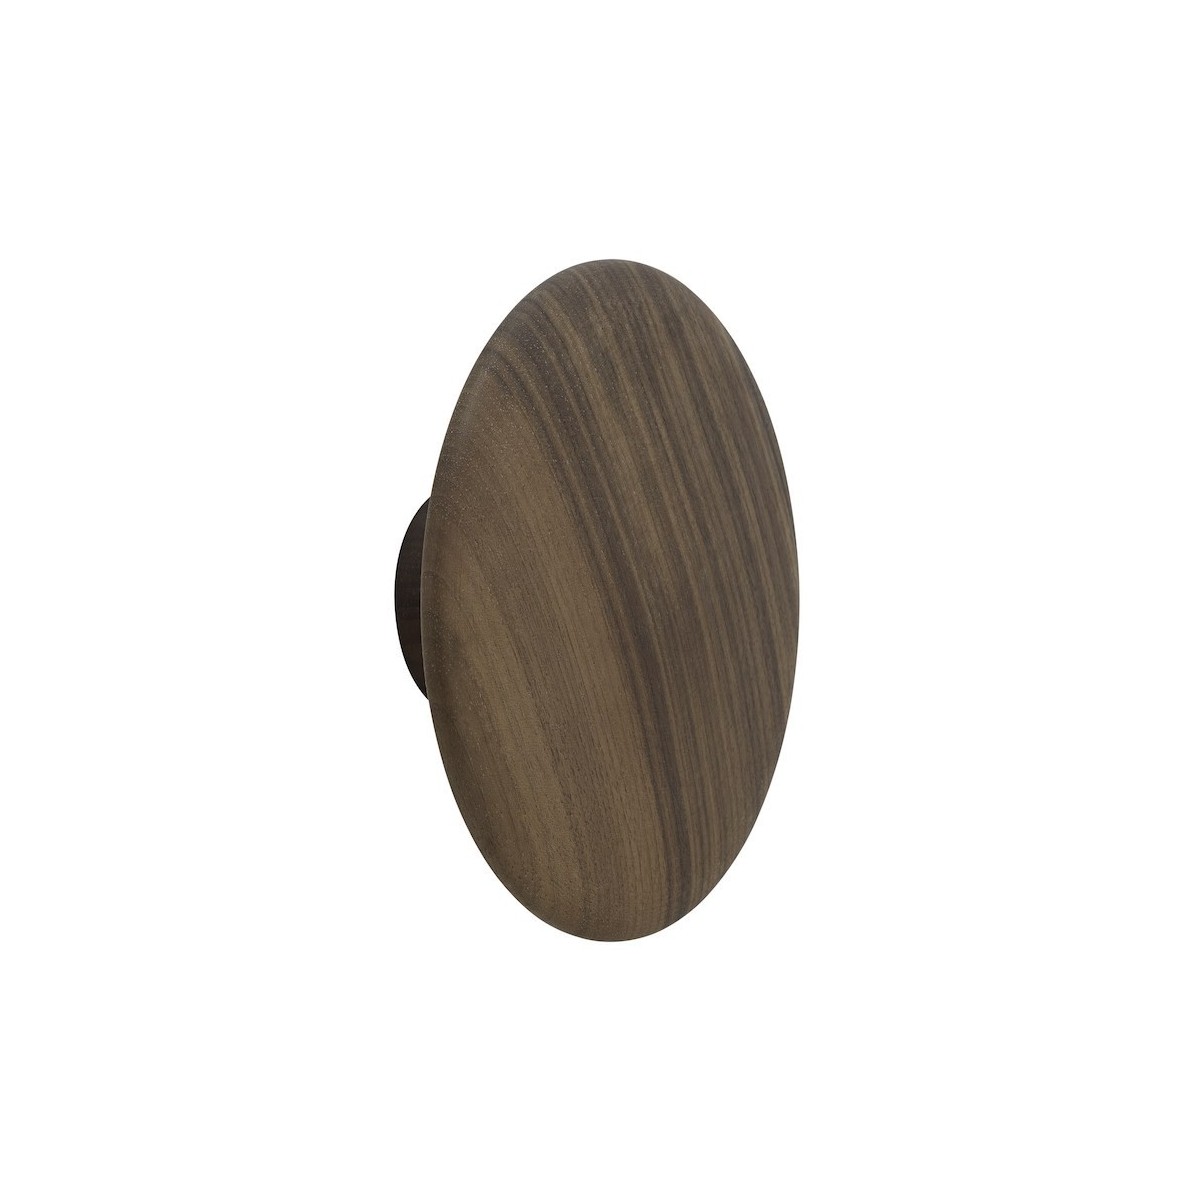 Ø17 cm (L) - walnut - The Dots wood